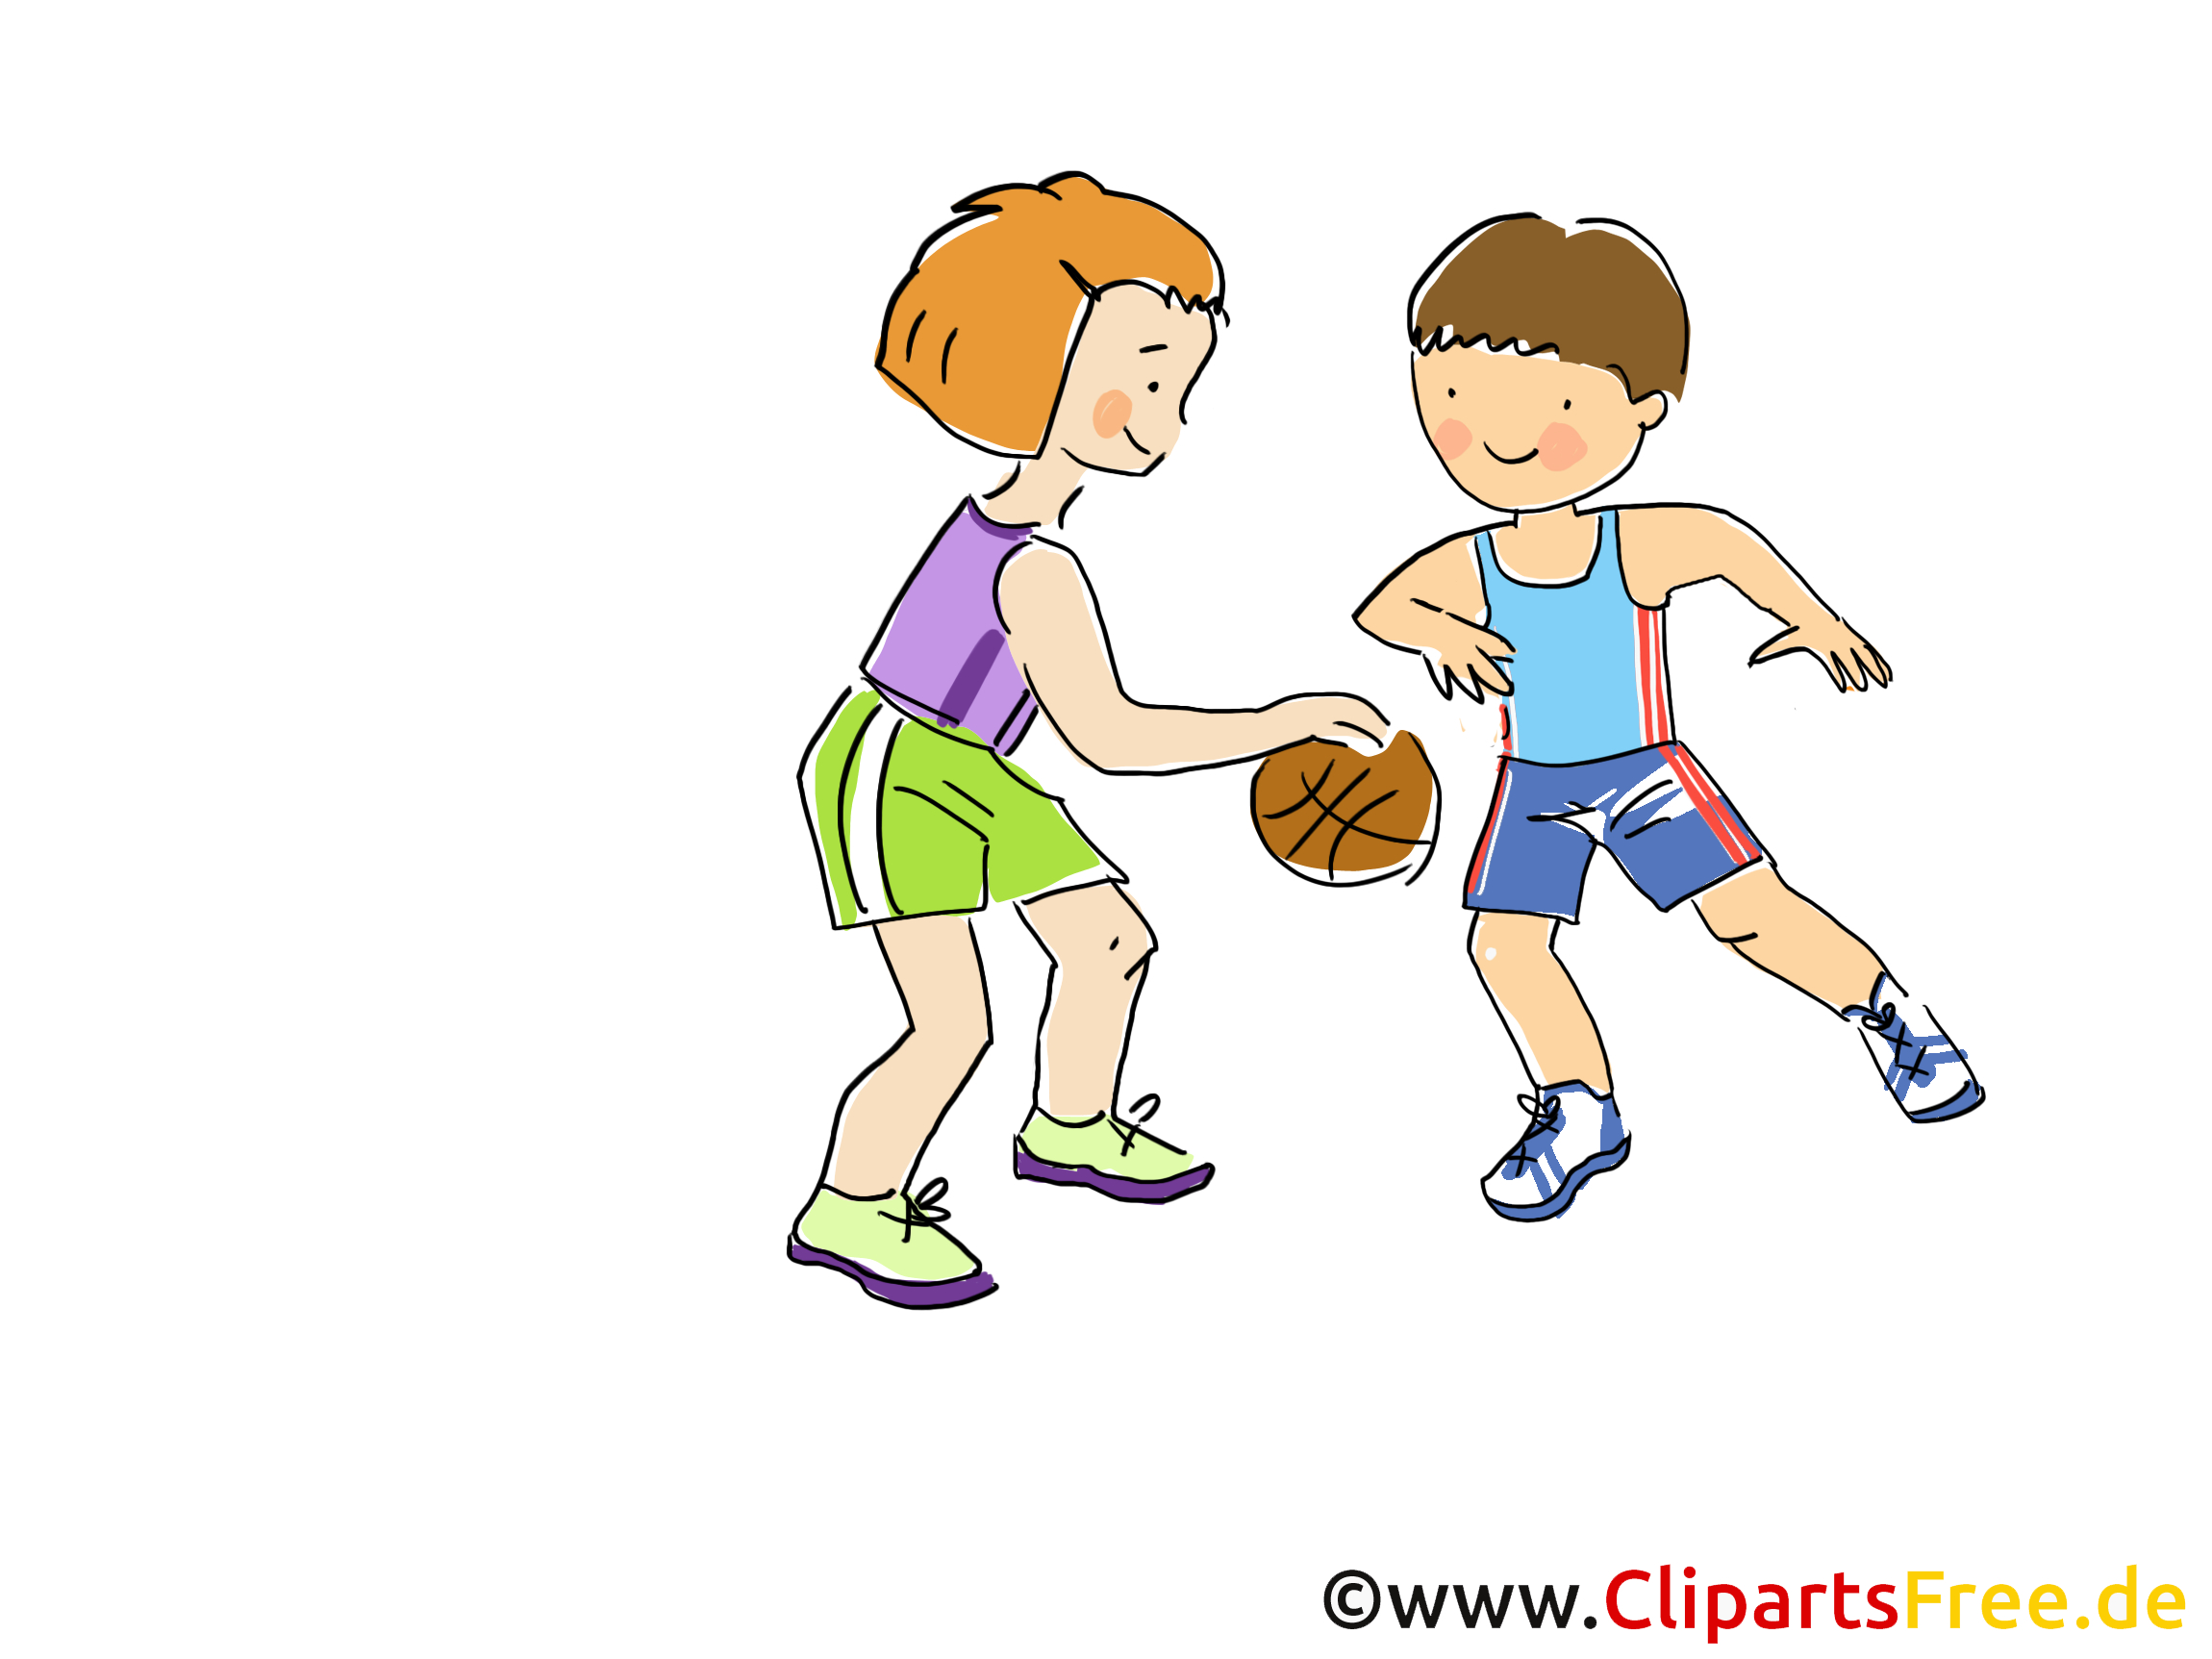 Clipart Musik Kinder 20 Free Cliparts | Download Images On mit Kinder Bilder Comic